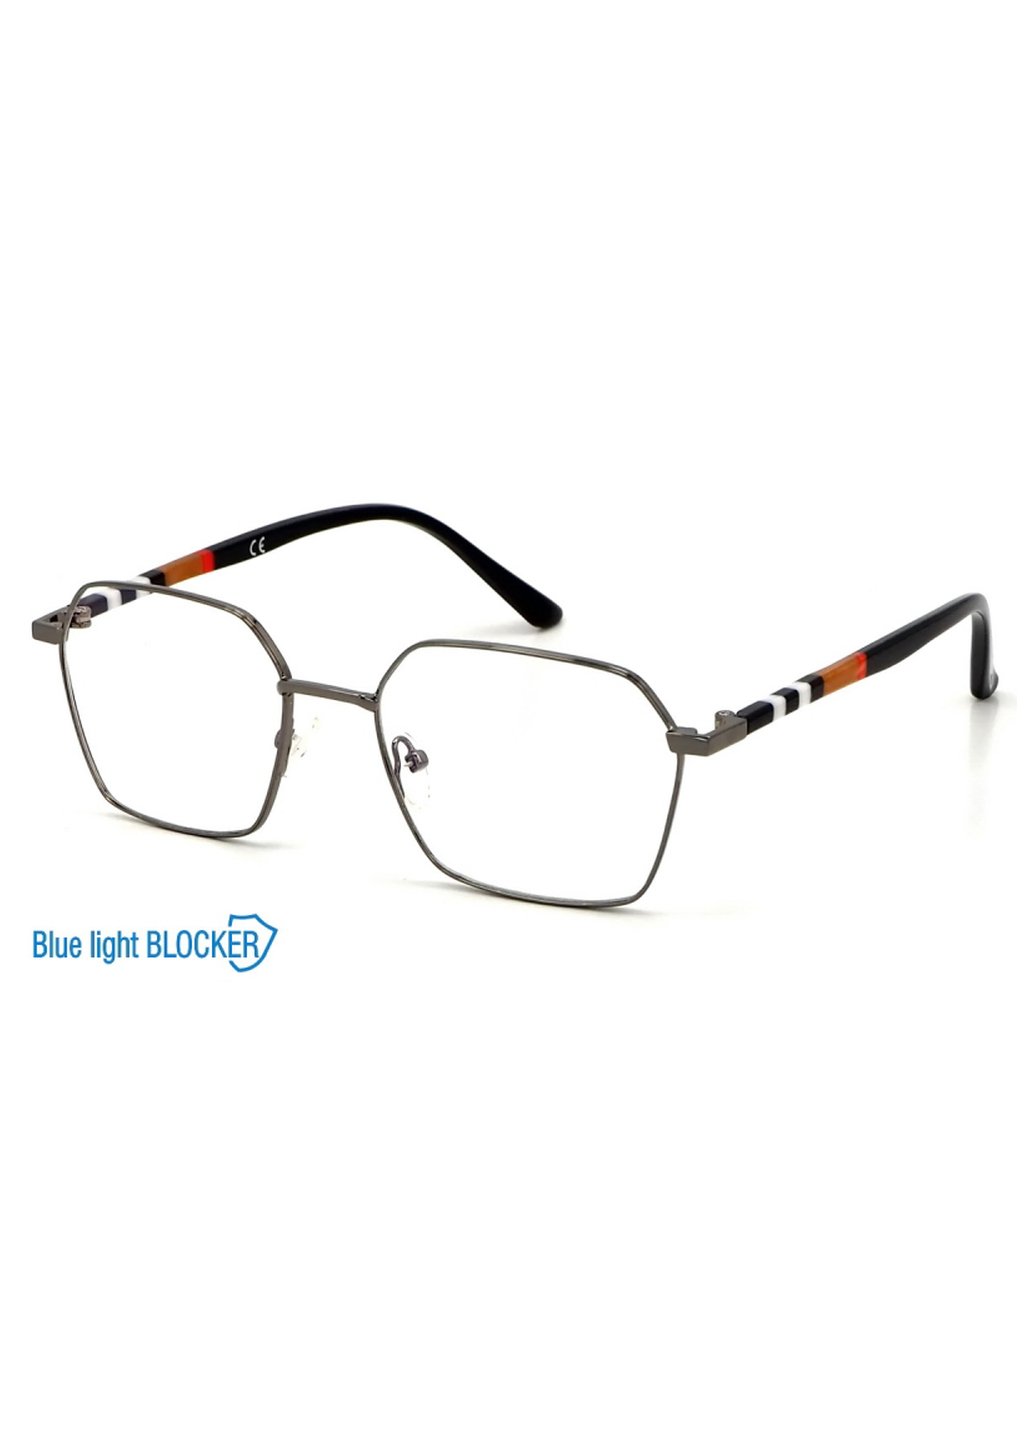 Купить Очки для работы за компьютером Cooper Glasses в серой оправе 124018 в интернет-магазине